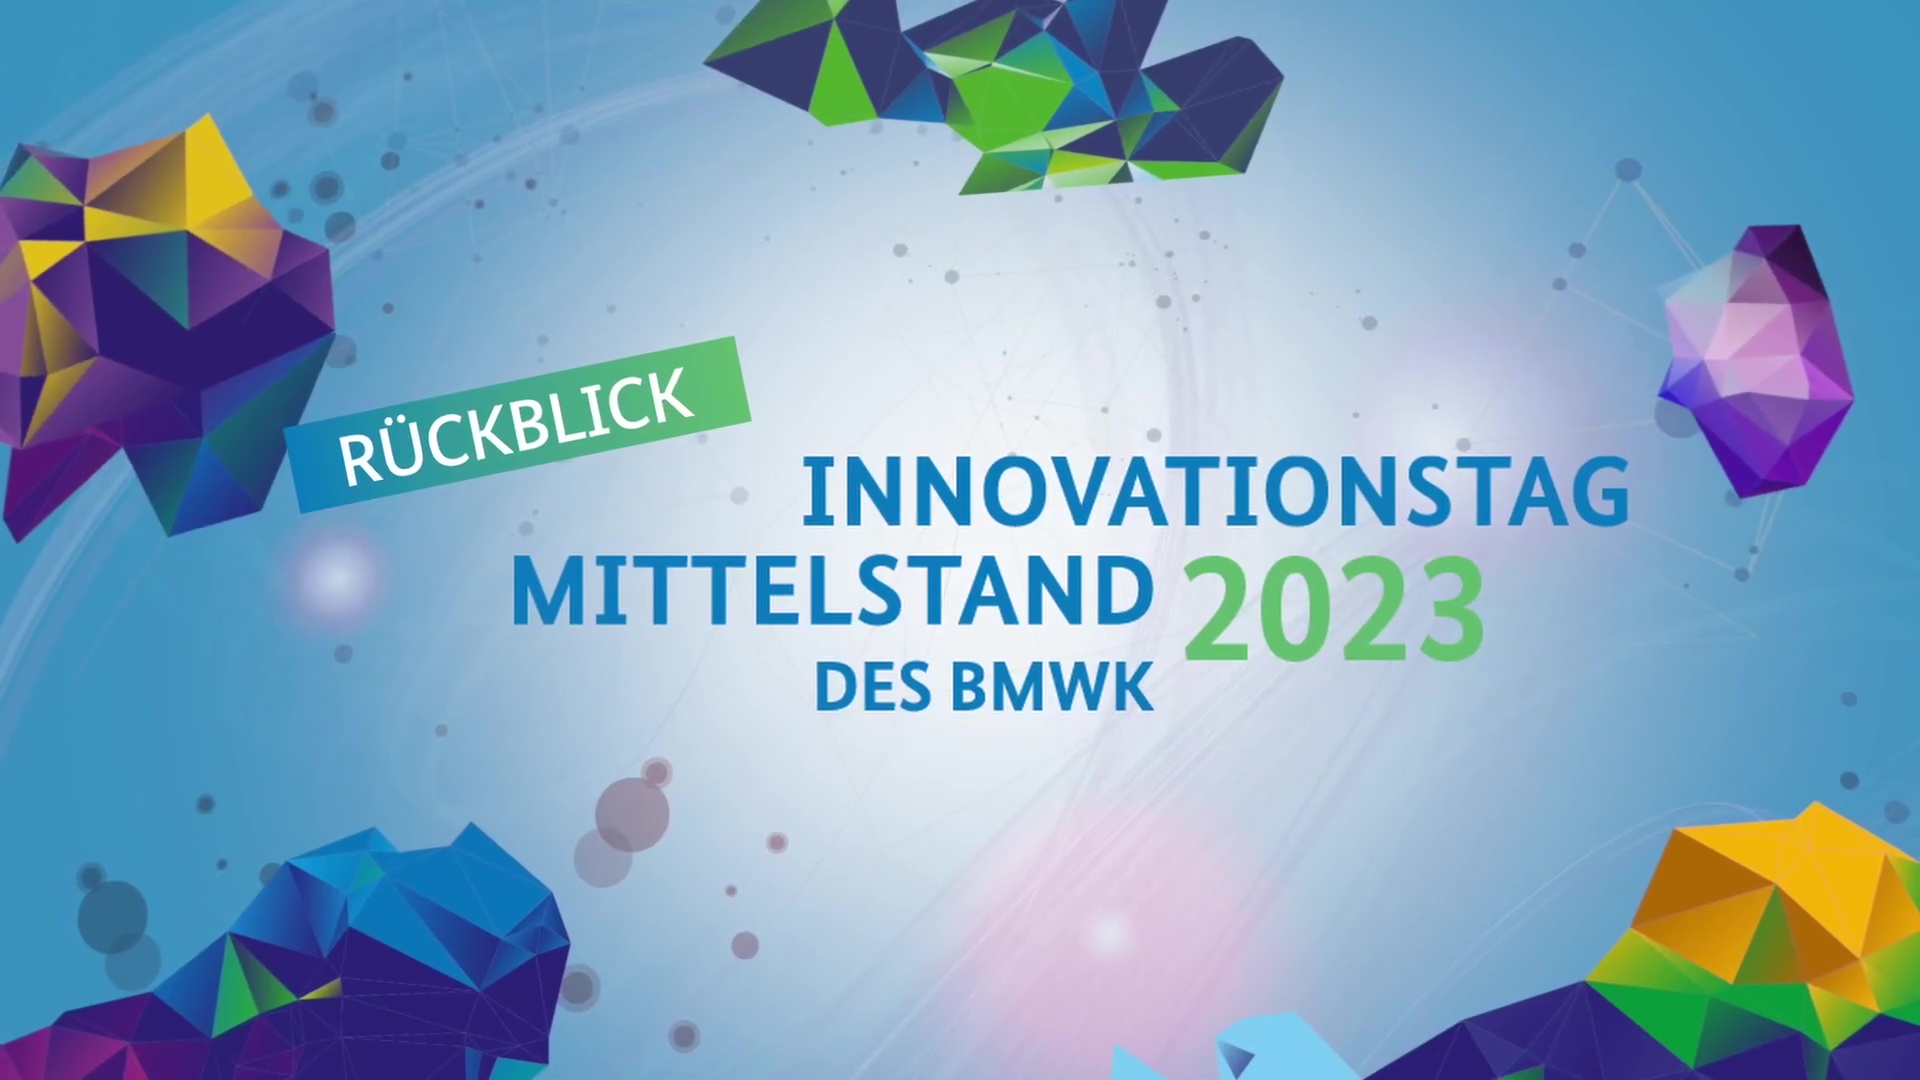 Standbild aus dem Video "Rückblick Innovationstag 2023"